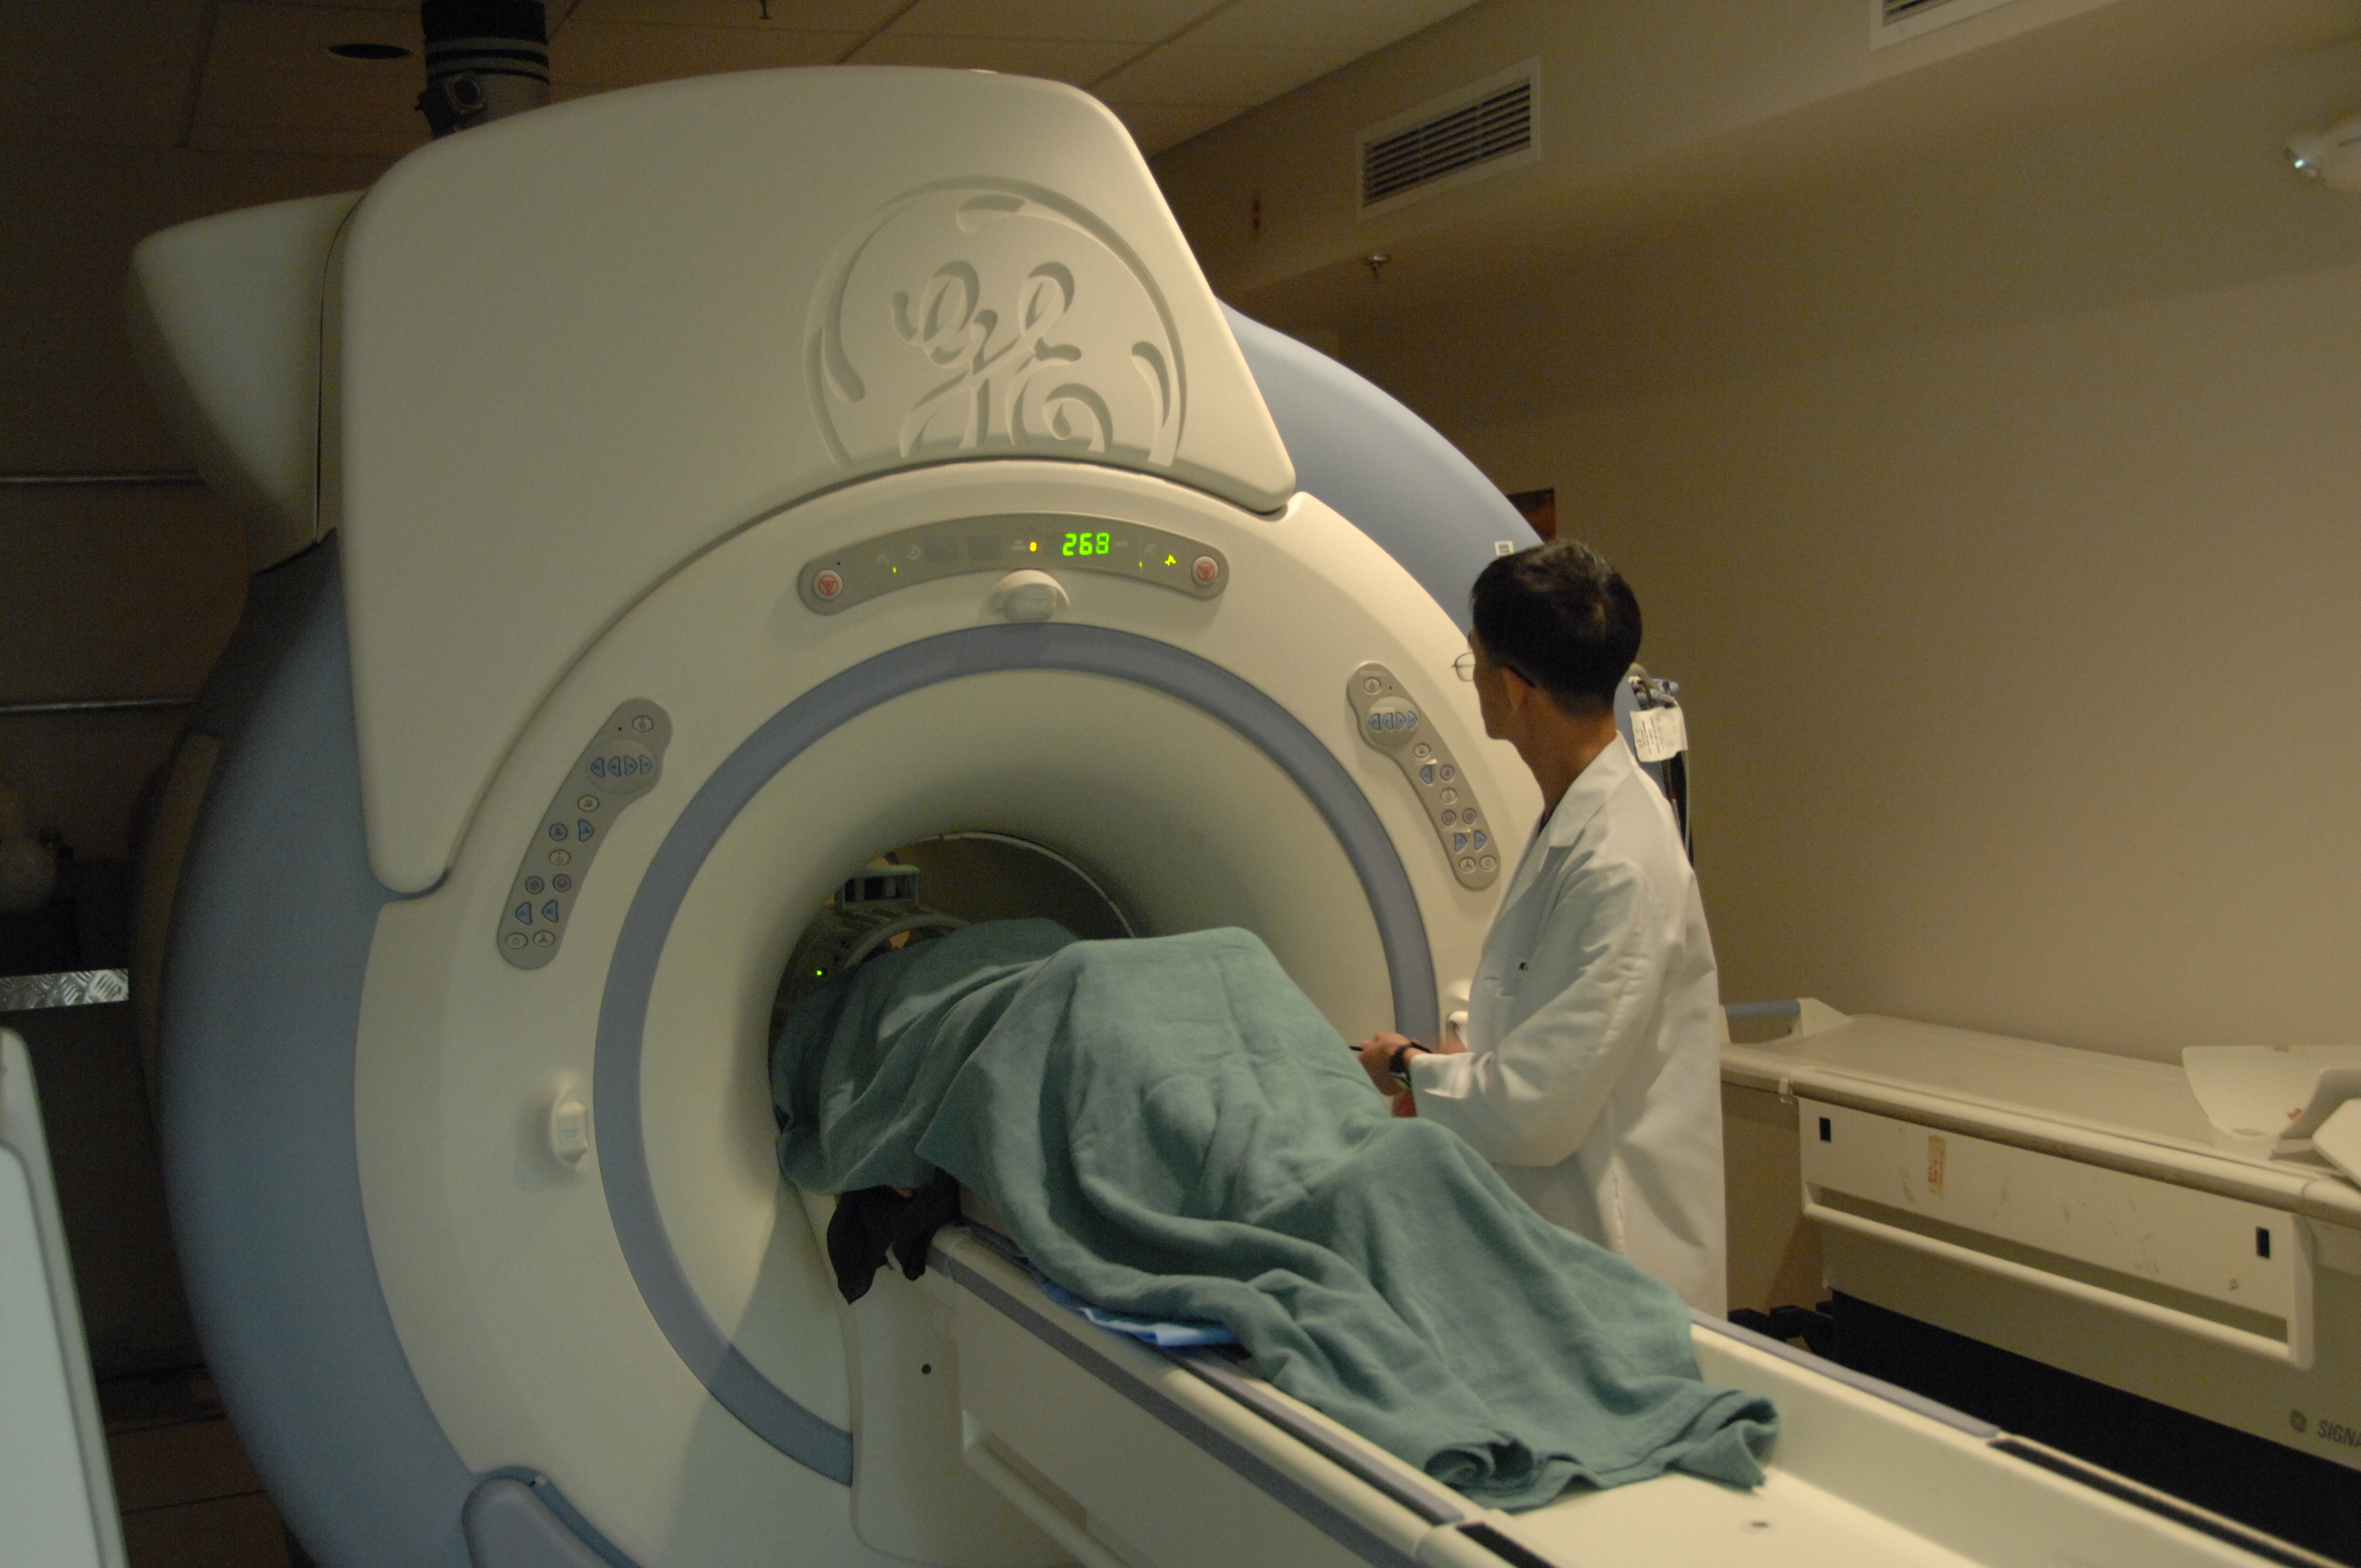 MRI machine with patient